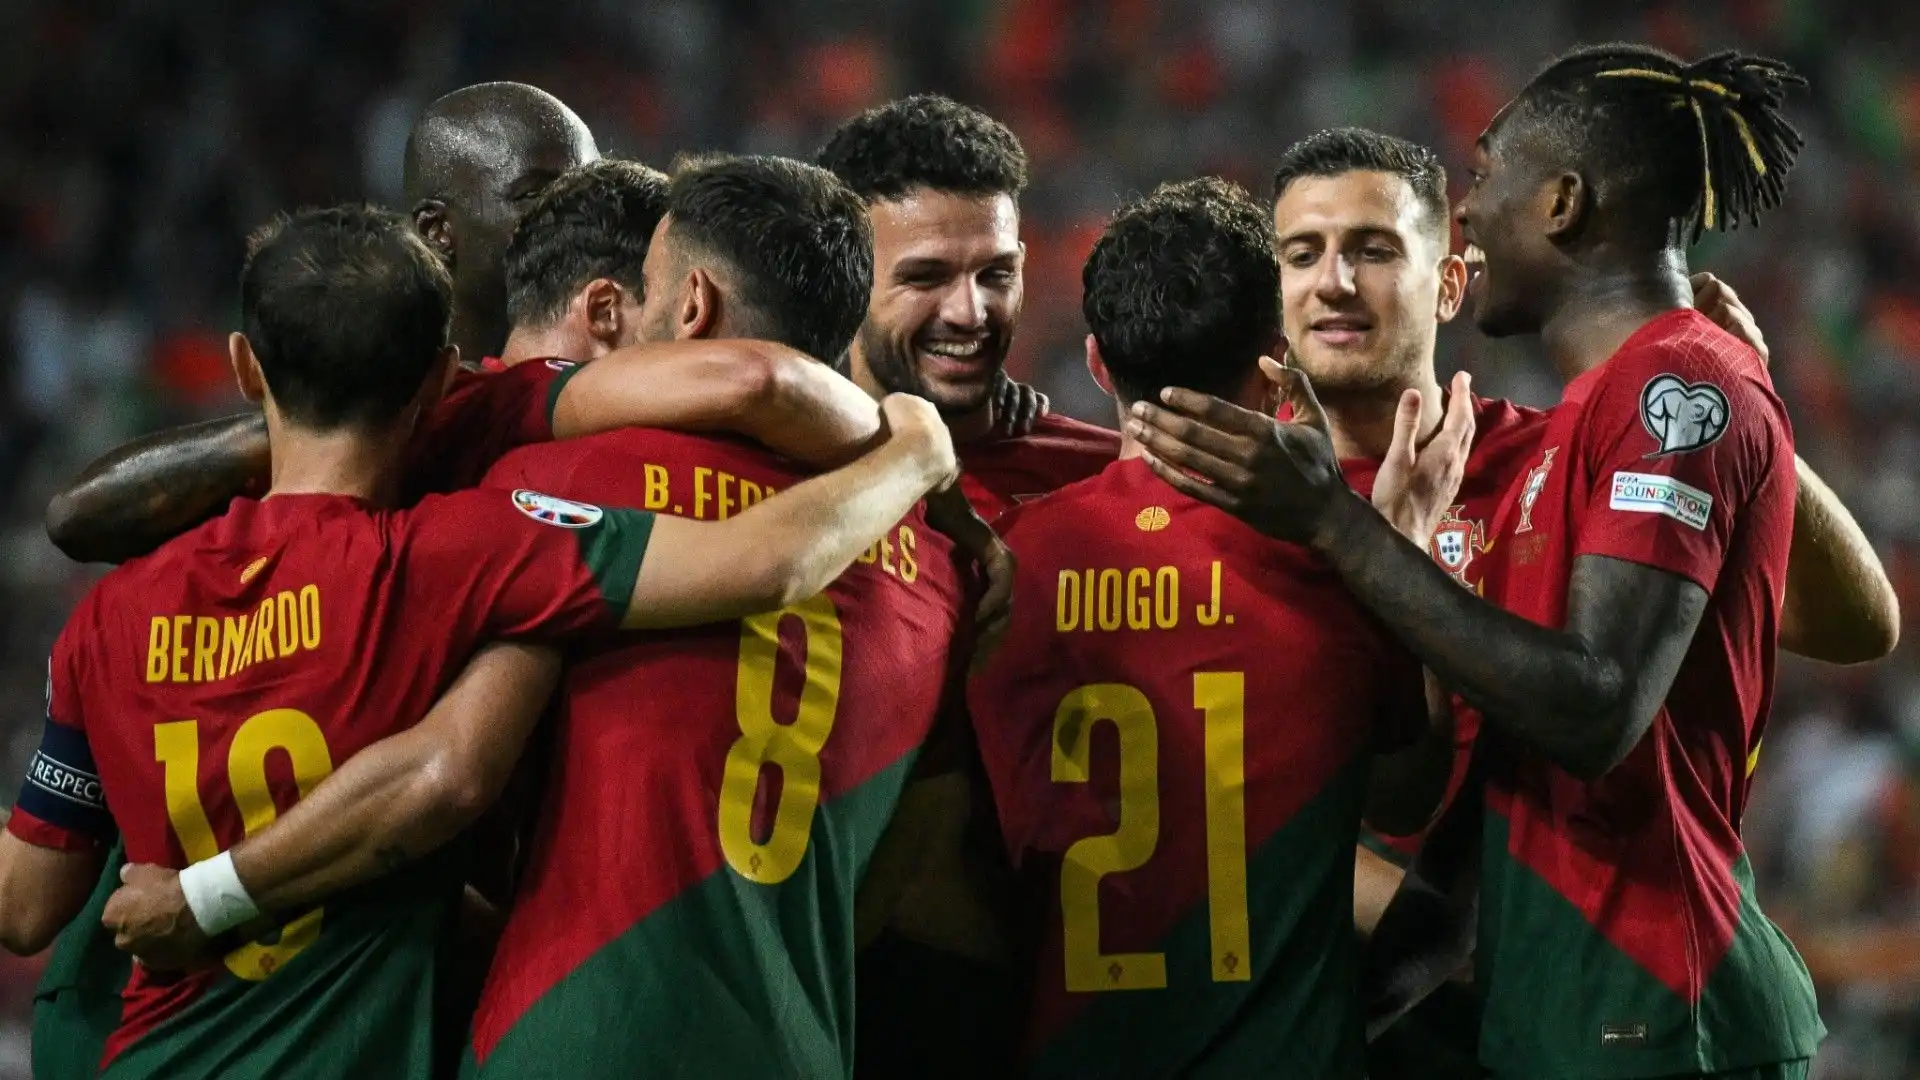 Vittoria nettissima per 9-0 del Portogallo